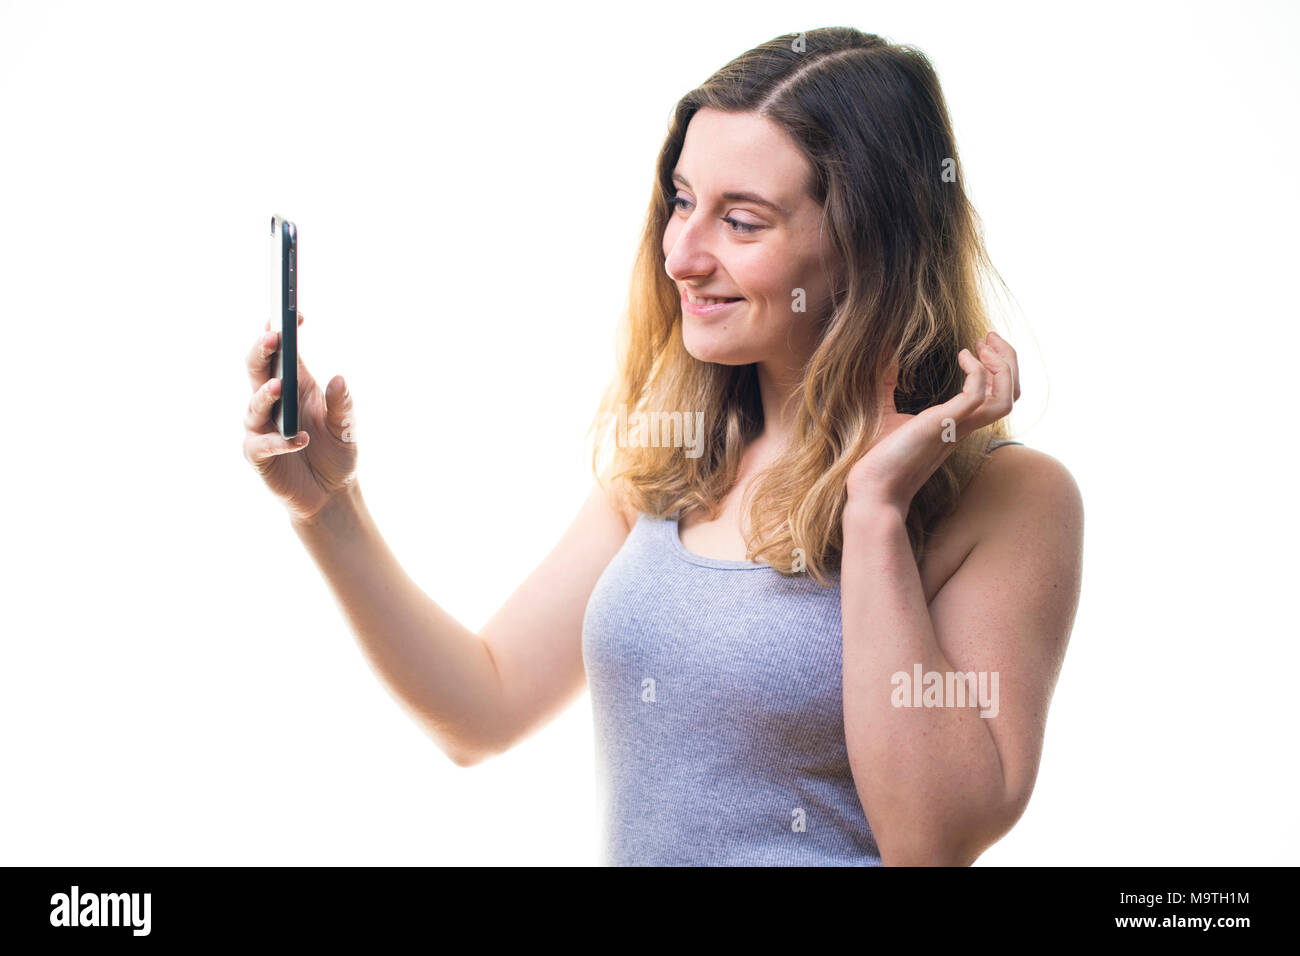 Une jeune femme de race blanche girl making a l'aide d'une photographie selfies iPhone téléphone cellulaire téléphone mobile , d'afficher sur son instagram snapchat et autres médias sociaux - UK Banque D'Images